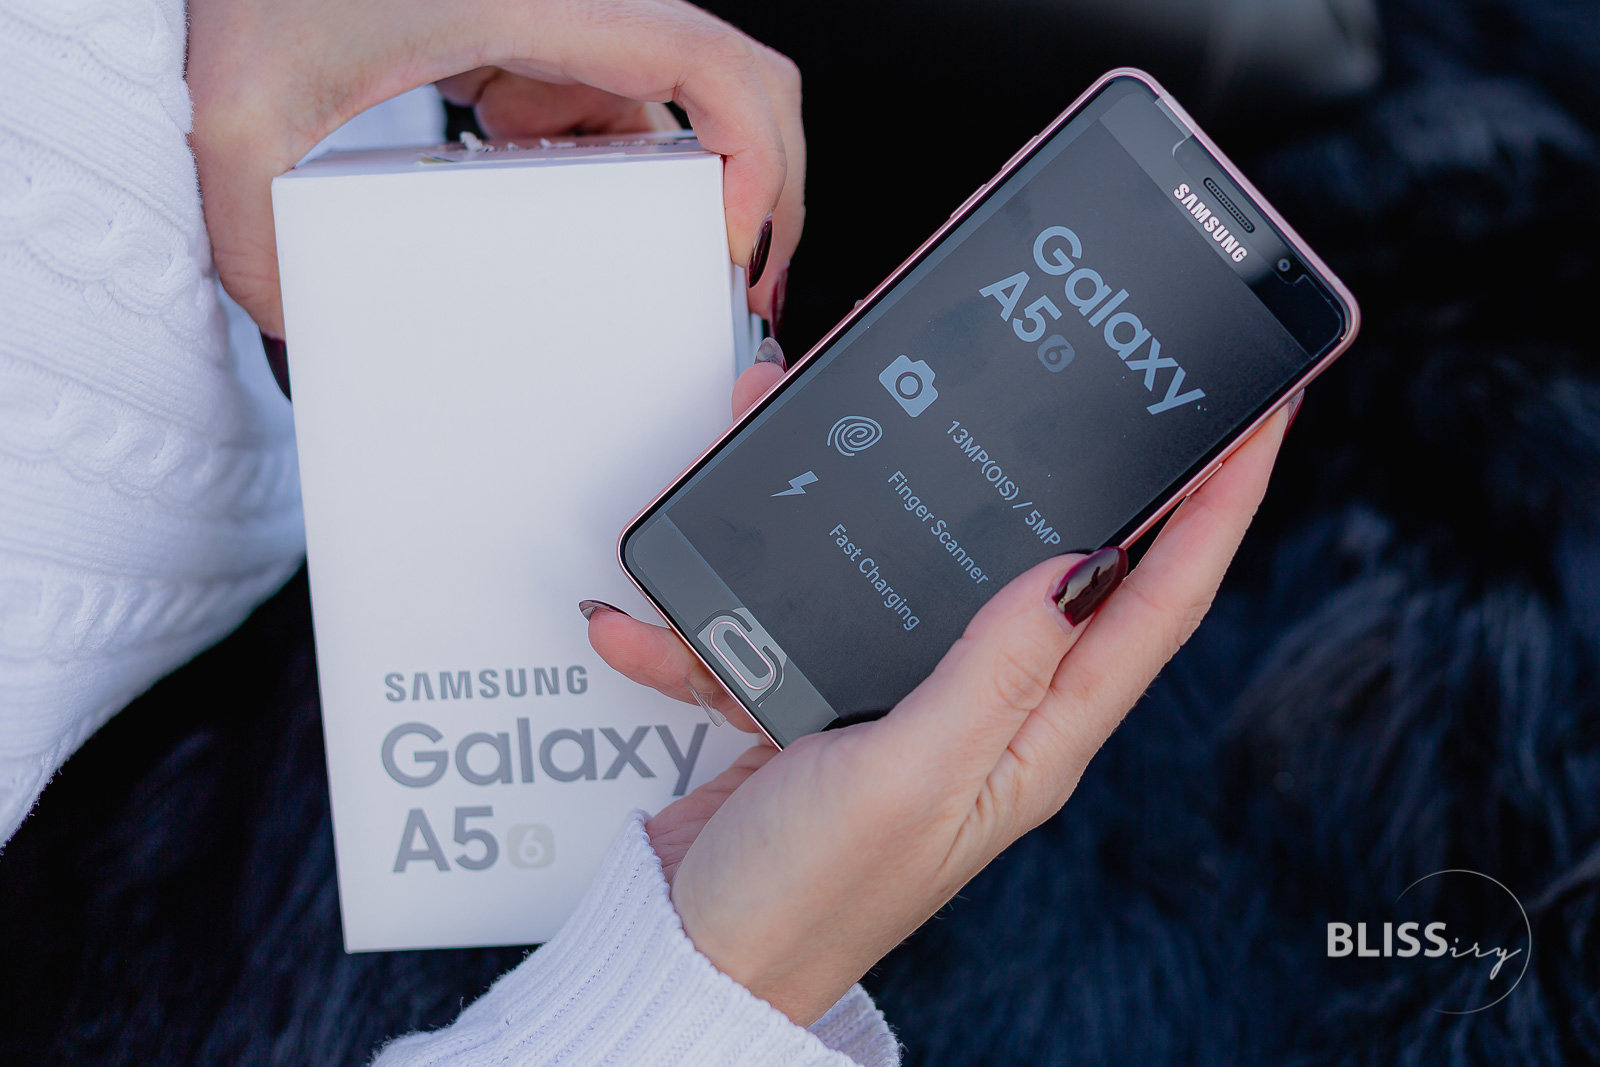 Samsung Galaxy A5-2016 - Produkttest - Vorstellung A5-Telefon in pink-rose-gold